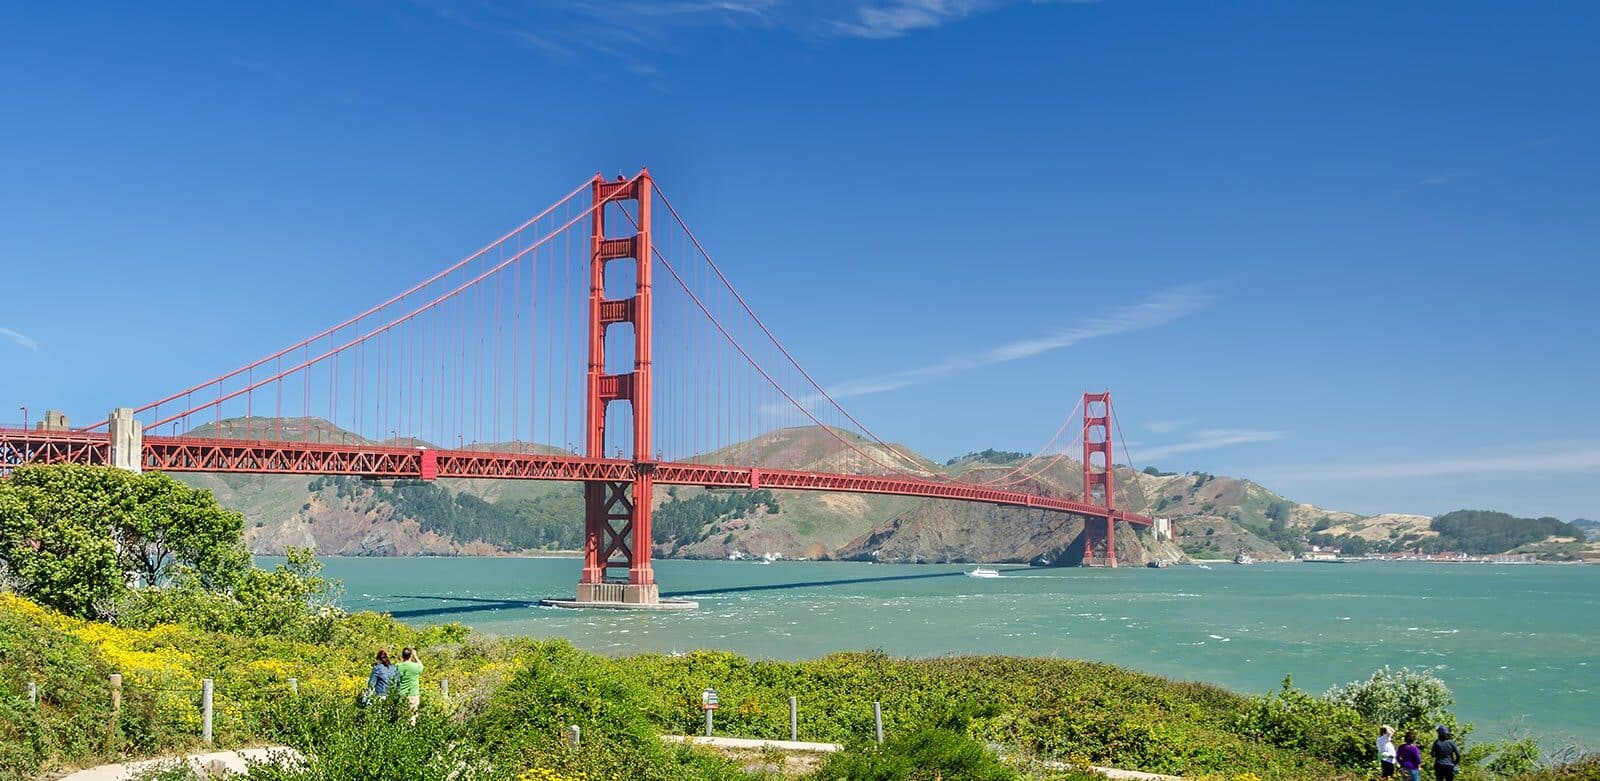 Fietstocht over de Golden Gate Bridge